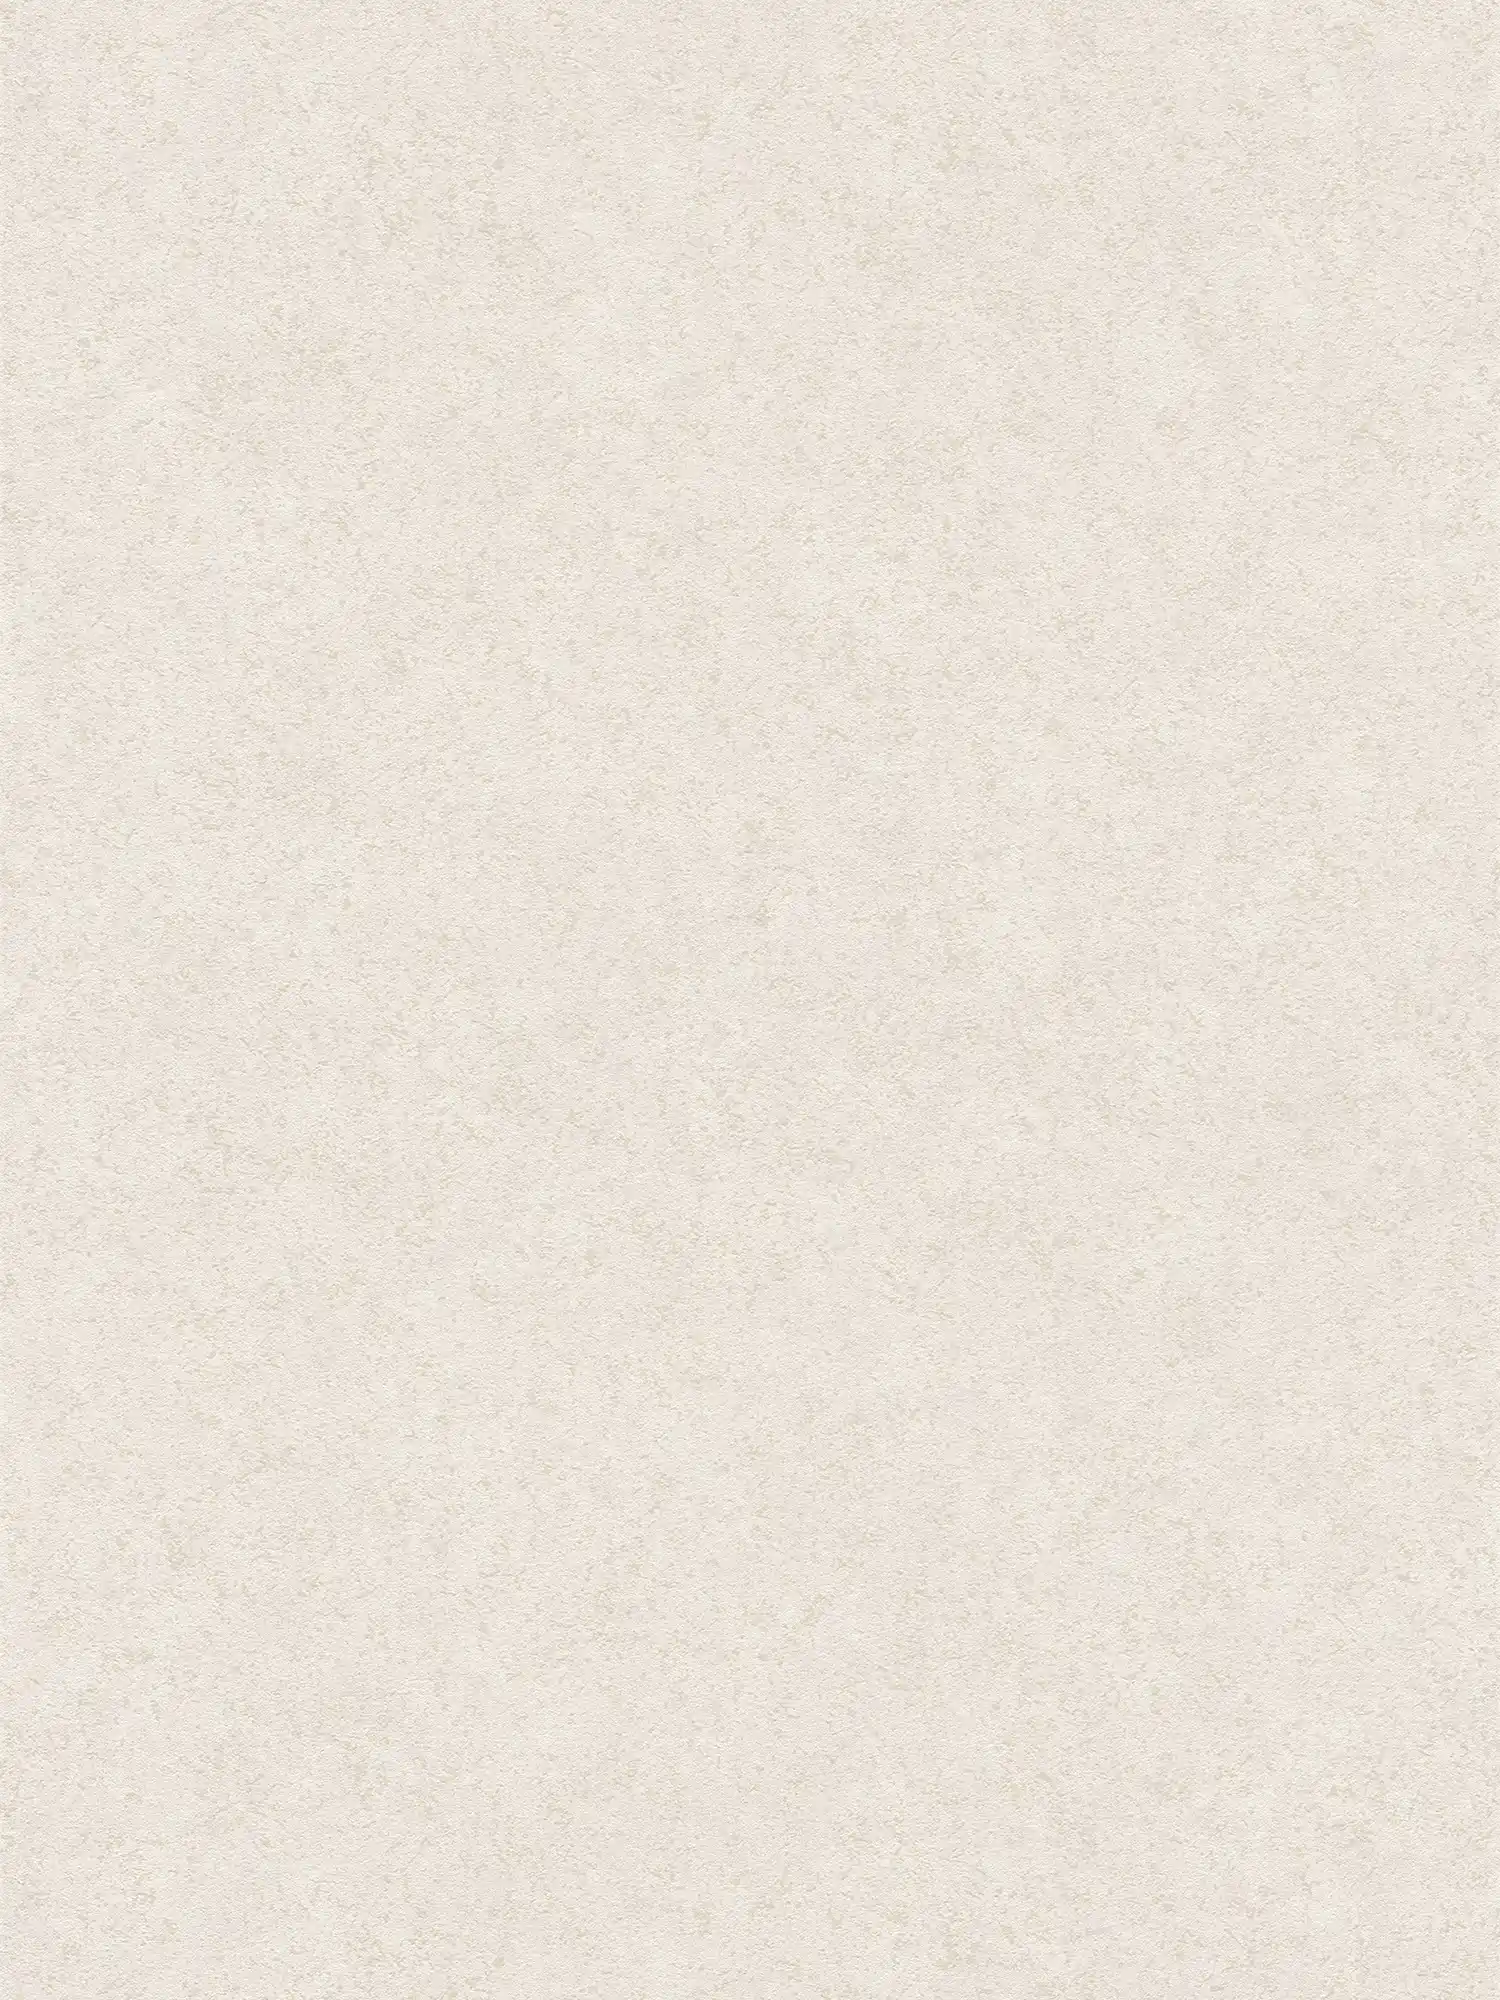 Mat vliesbehang met gipslook - beige, wit
